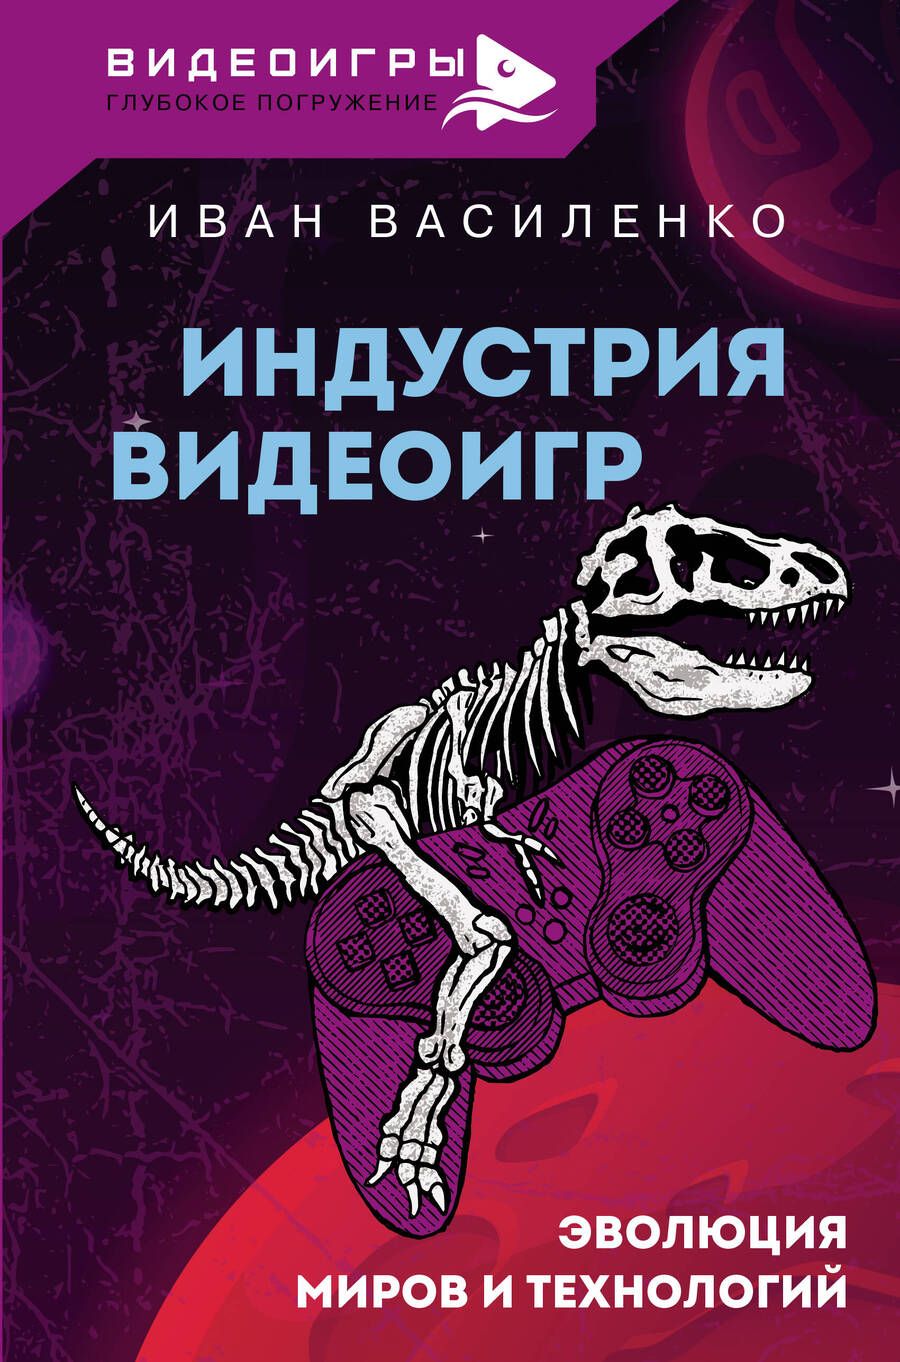 Обложка книги "Василенко: Индустрия видеоигр. Эволюция миров и технологий"